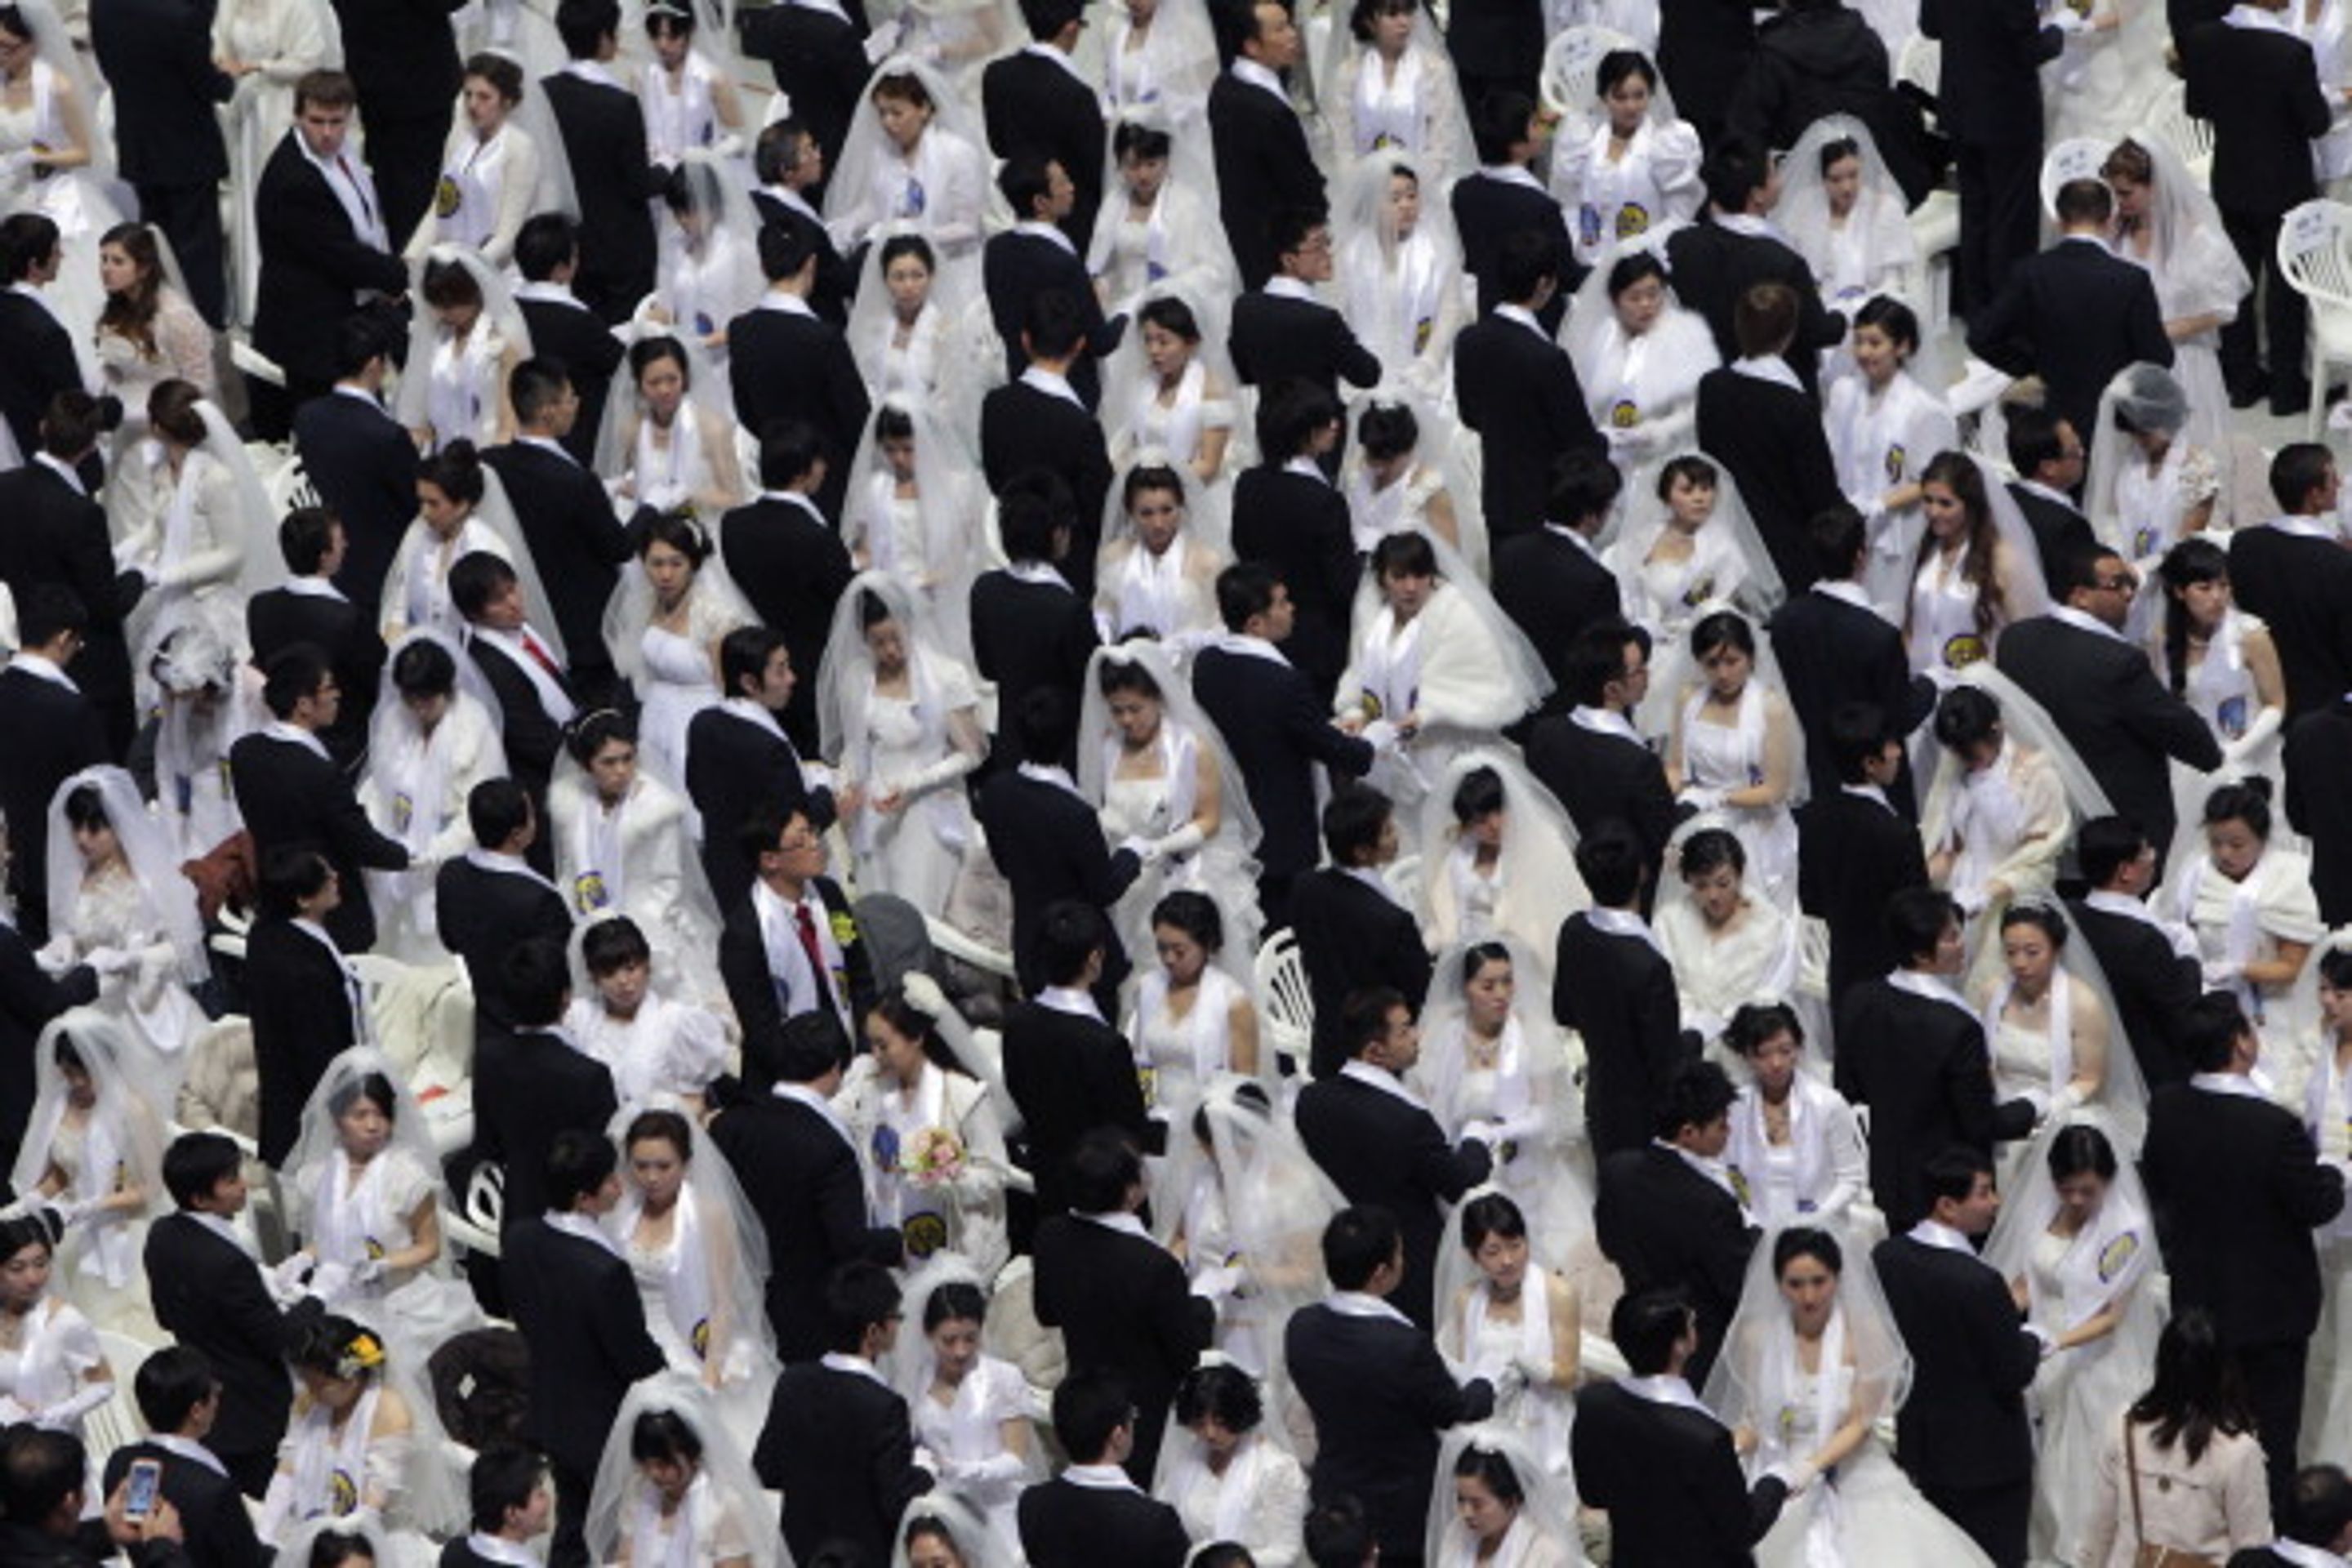 Hromadná svatba v Jižní Koreji - 6 - Svatba ve velkém stylu: Bralo se 3500 párů najednou! (7/12)